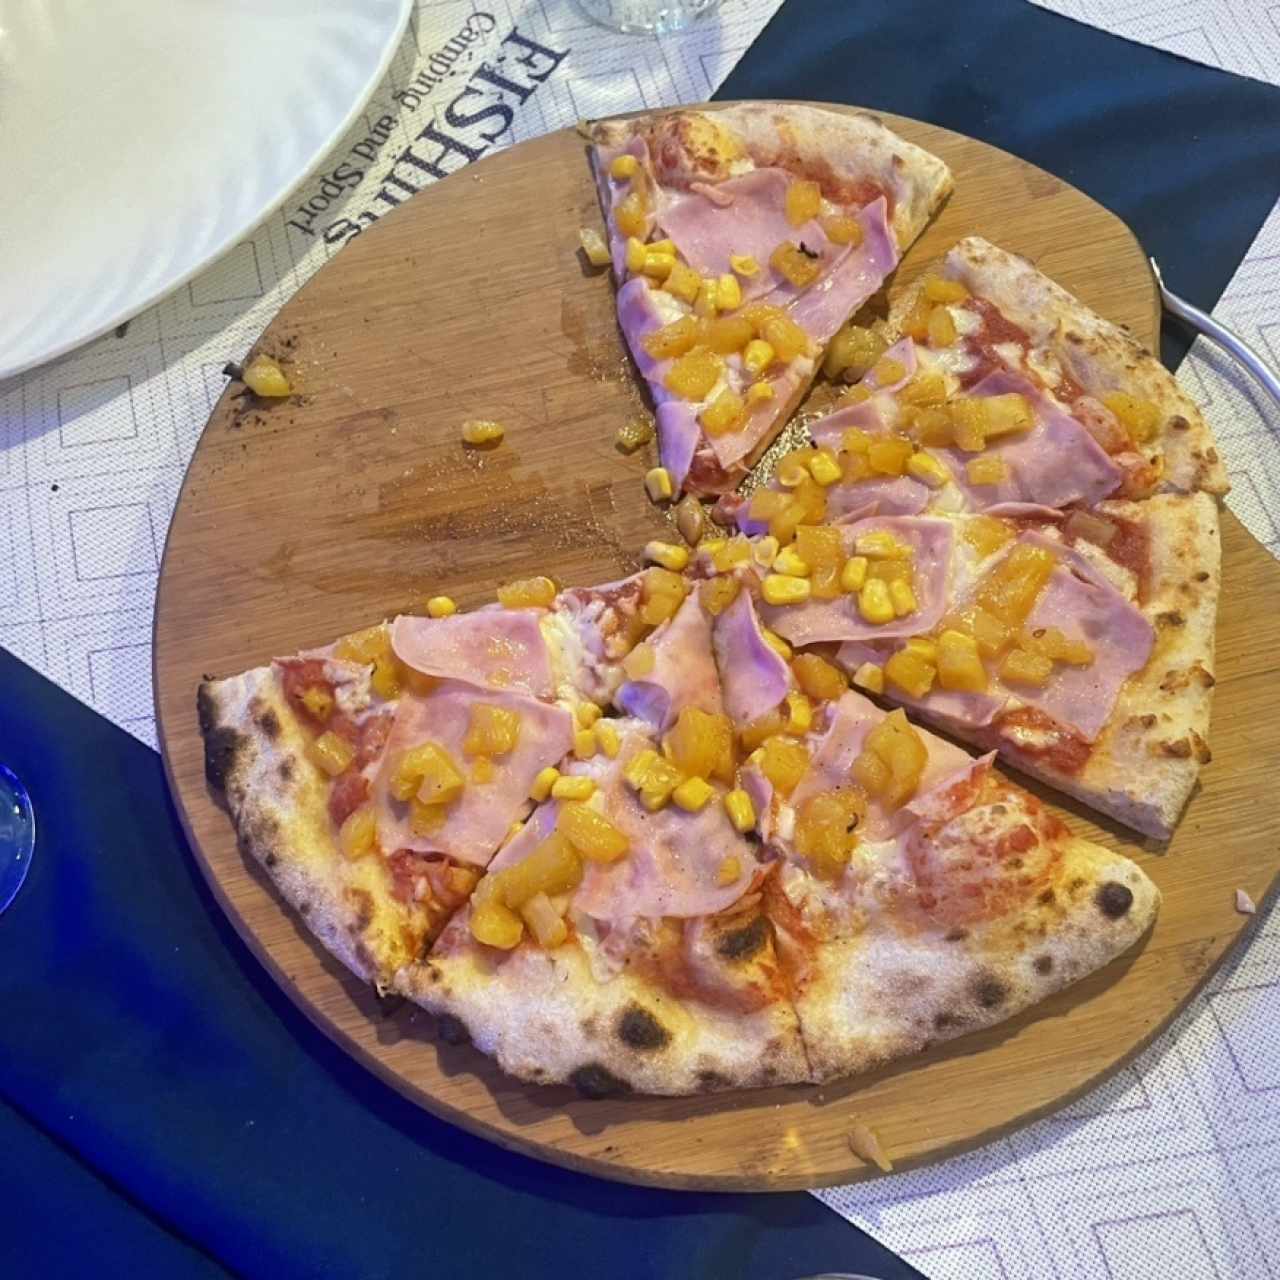 Pizzas 12" - Pizza Hawaiana 12"